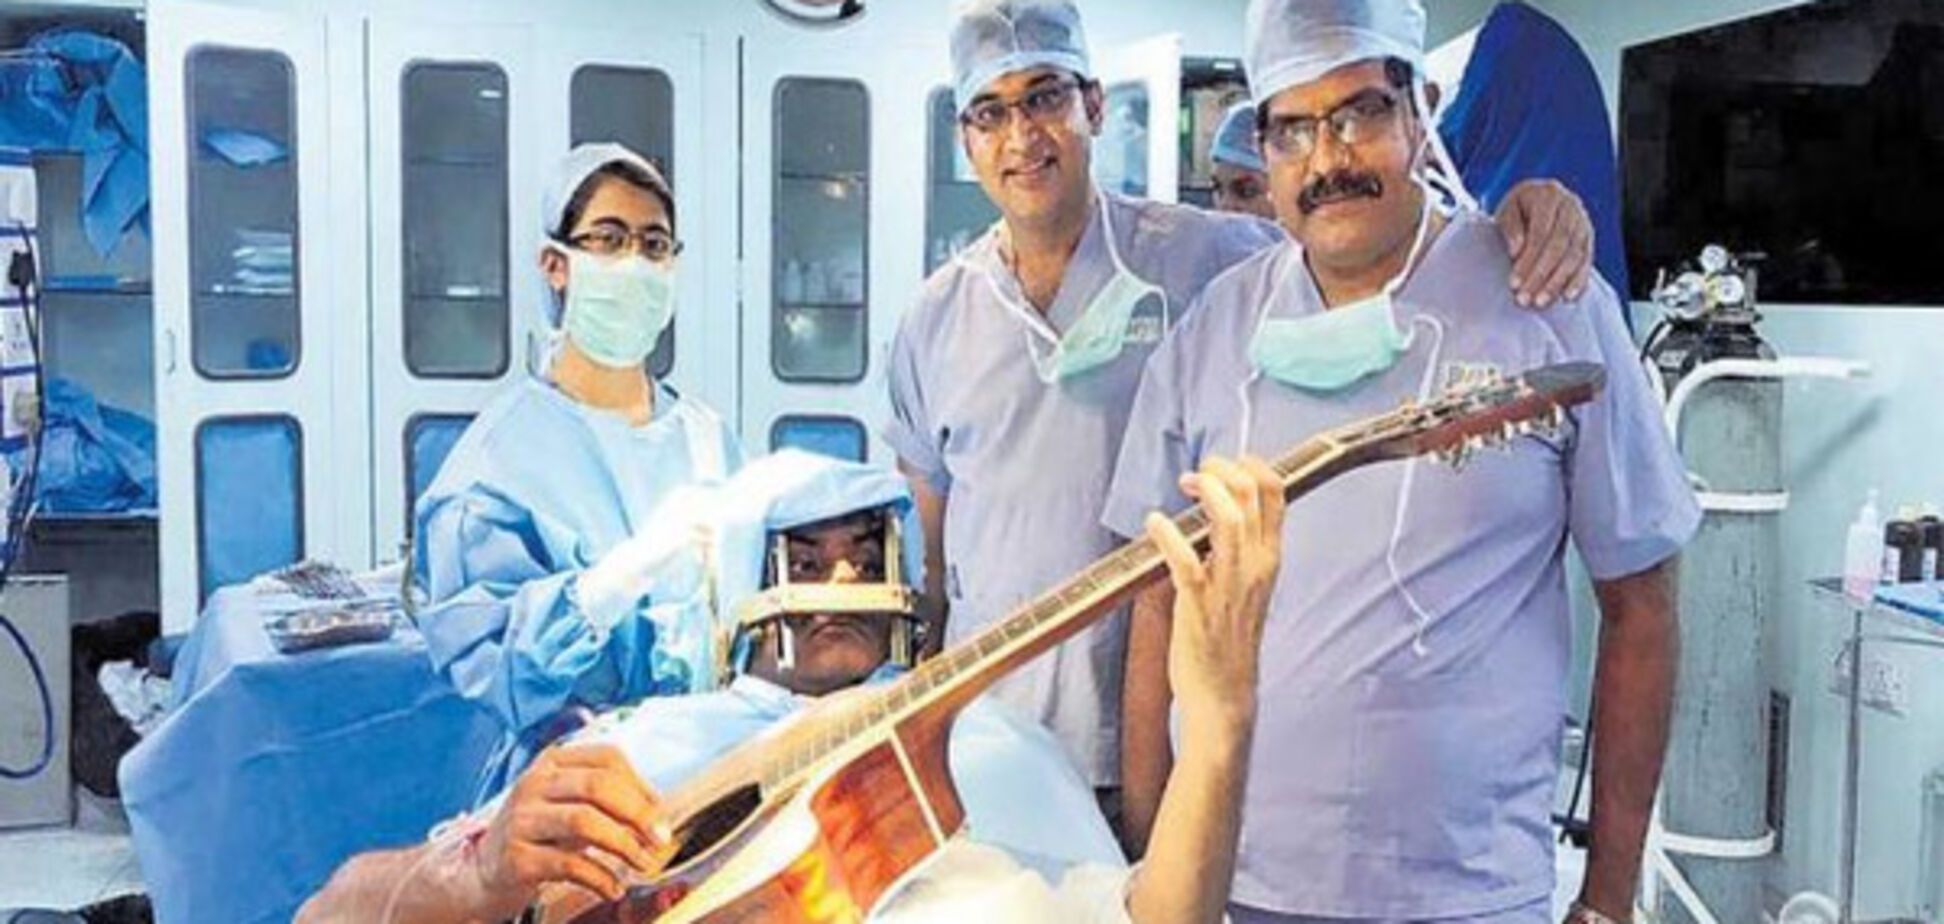 Индийский музыкант семь часов играл на гитаре, пока ему оперировали мозг